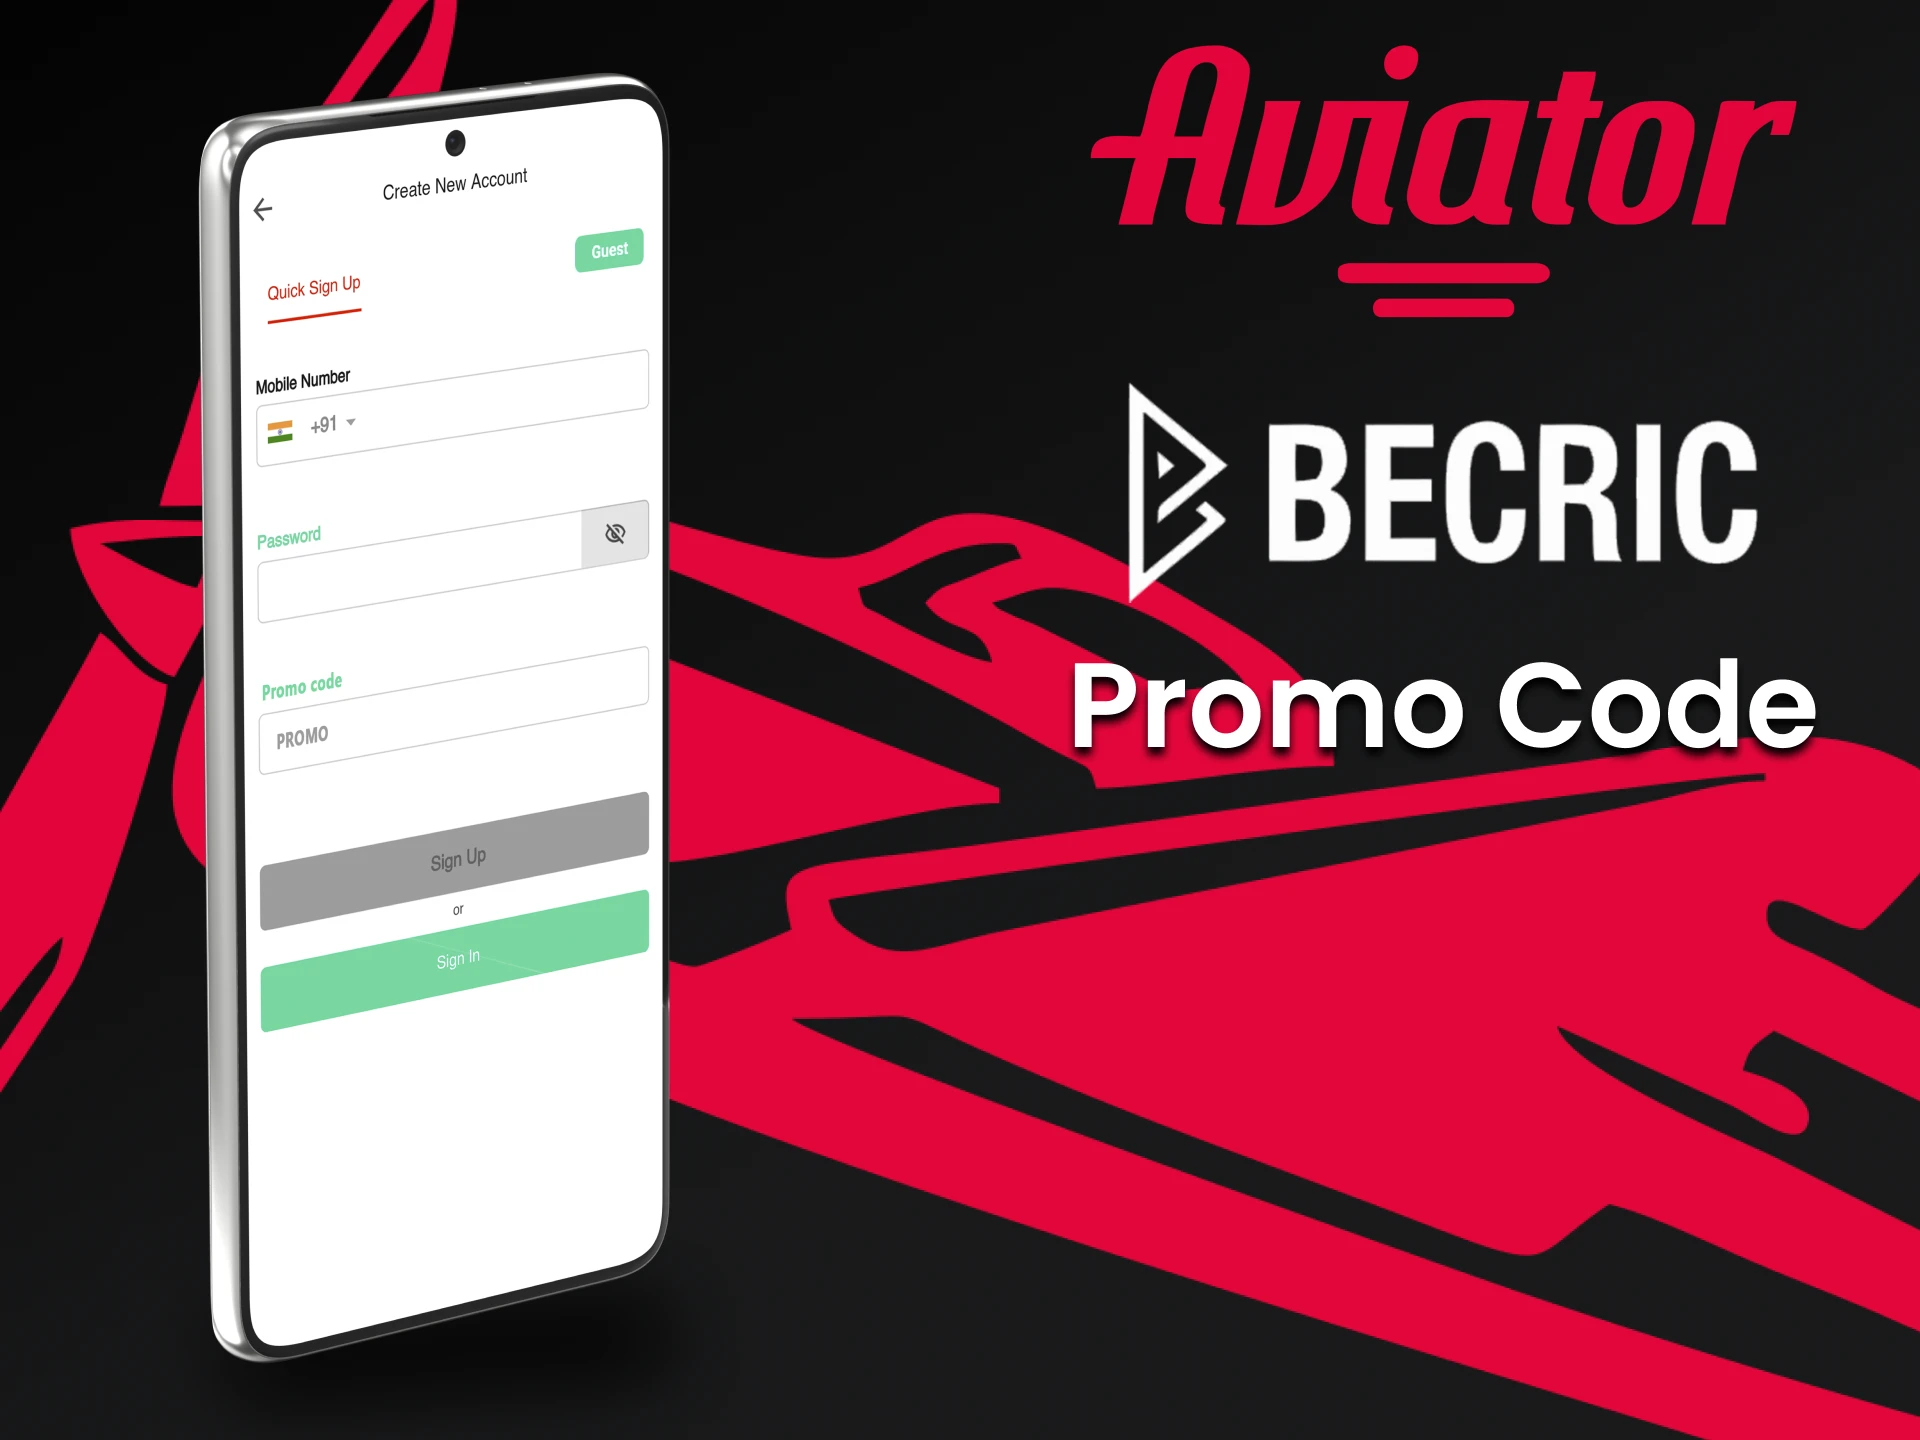 Use o código promocional da Becric para ganhar um bônus.